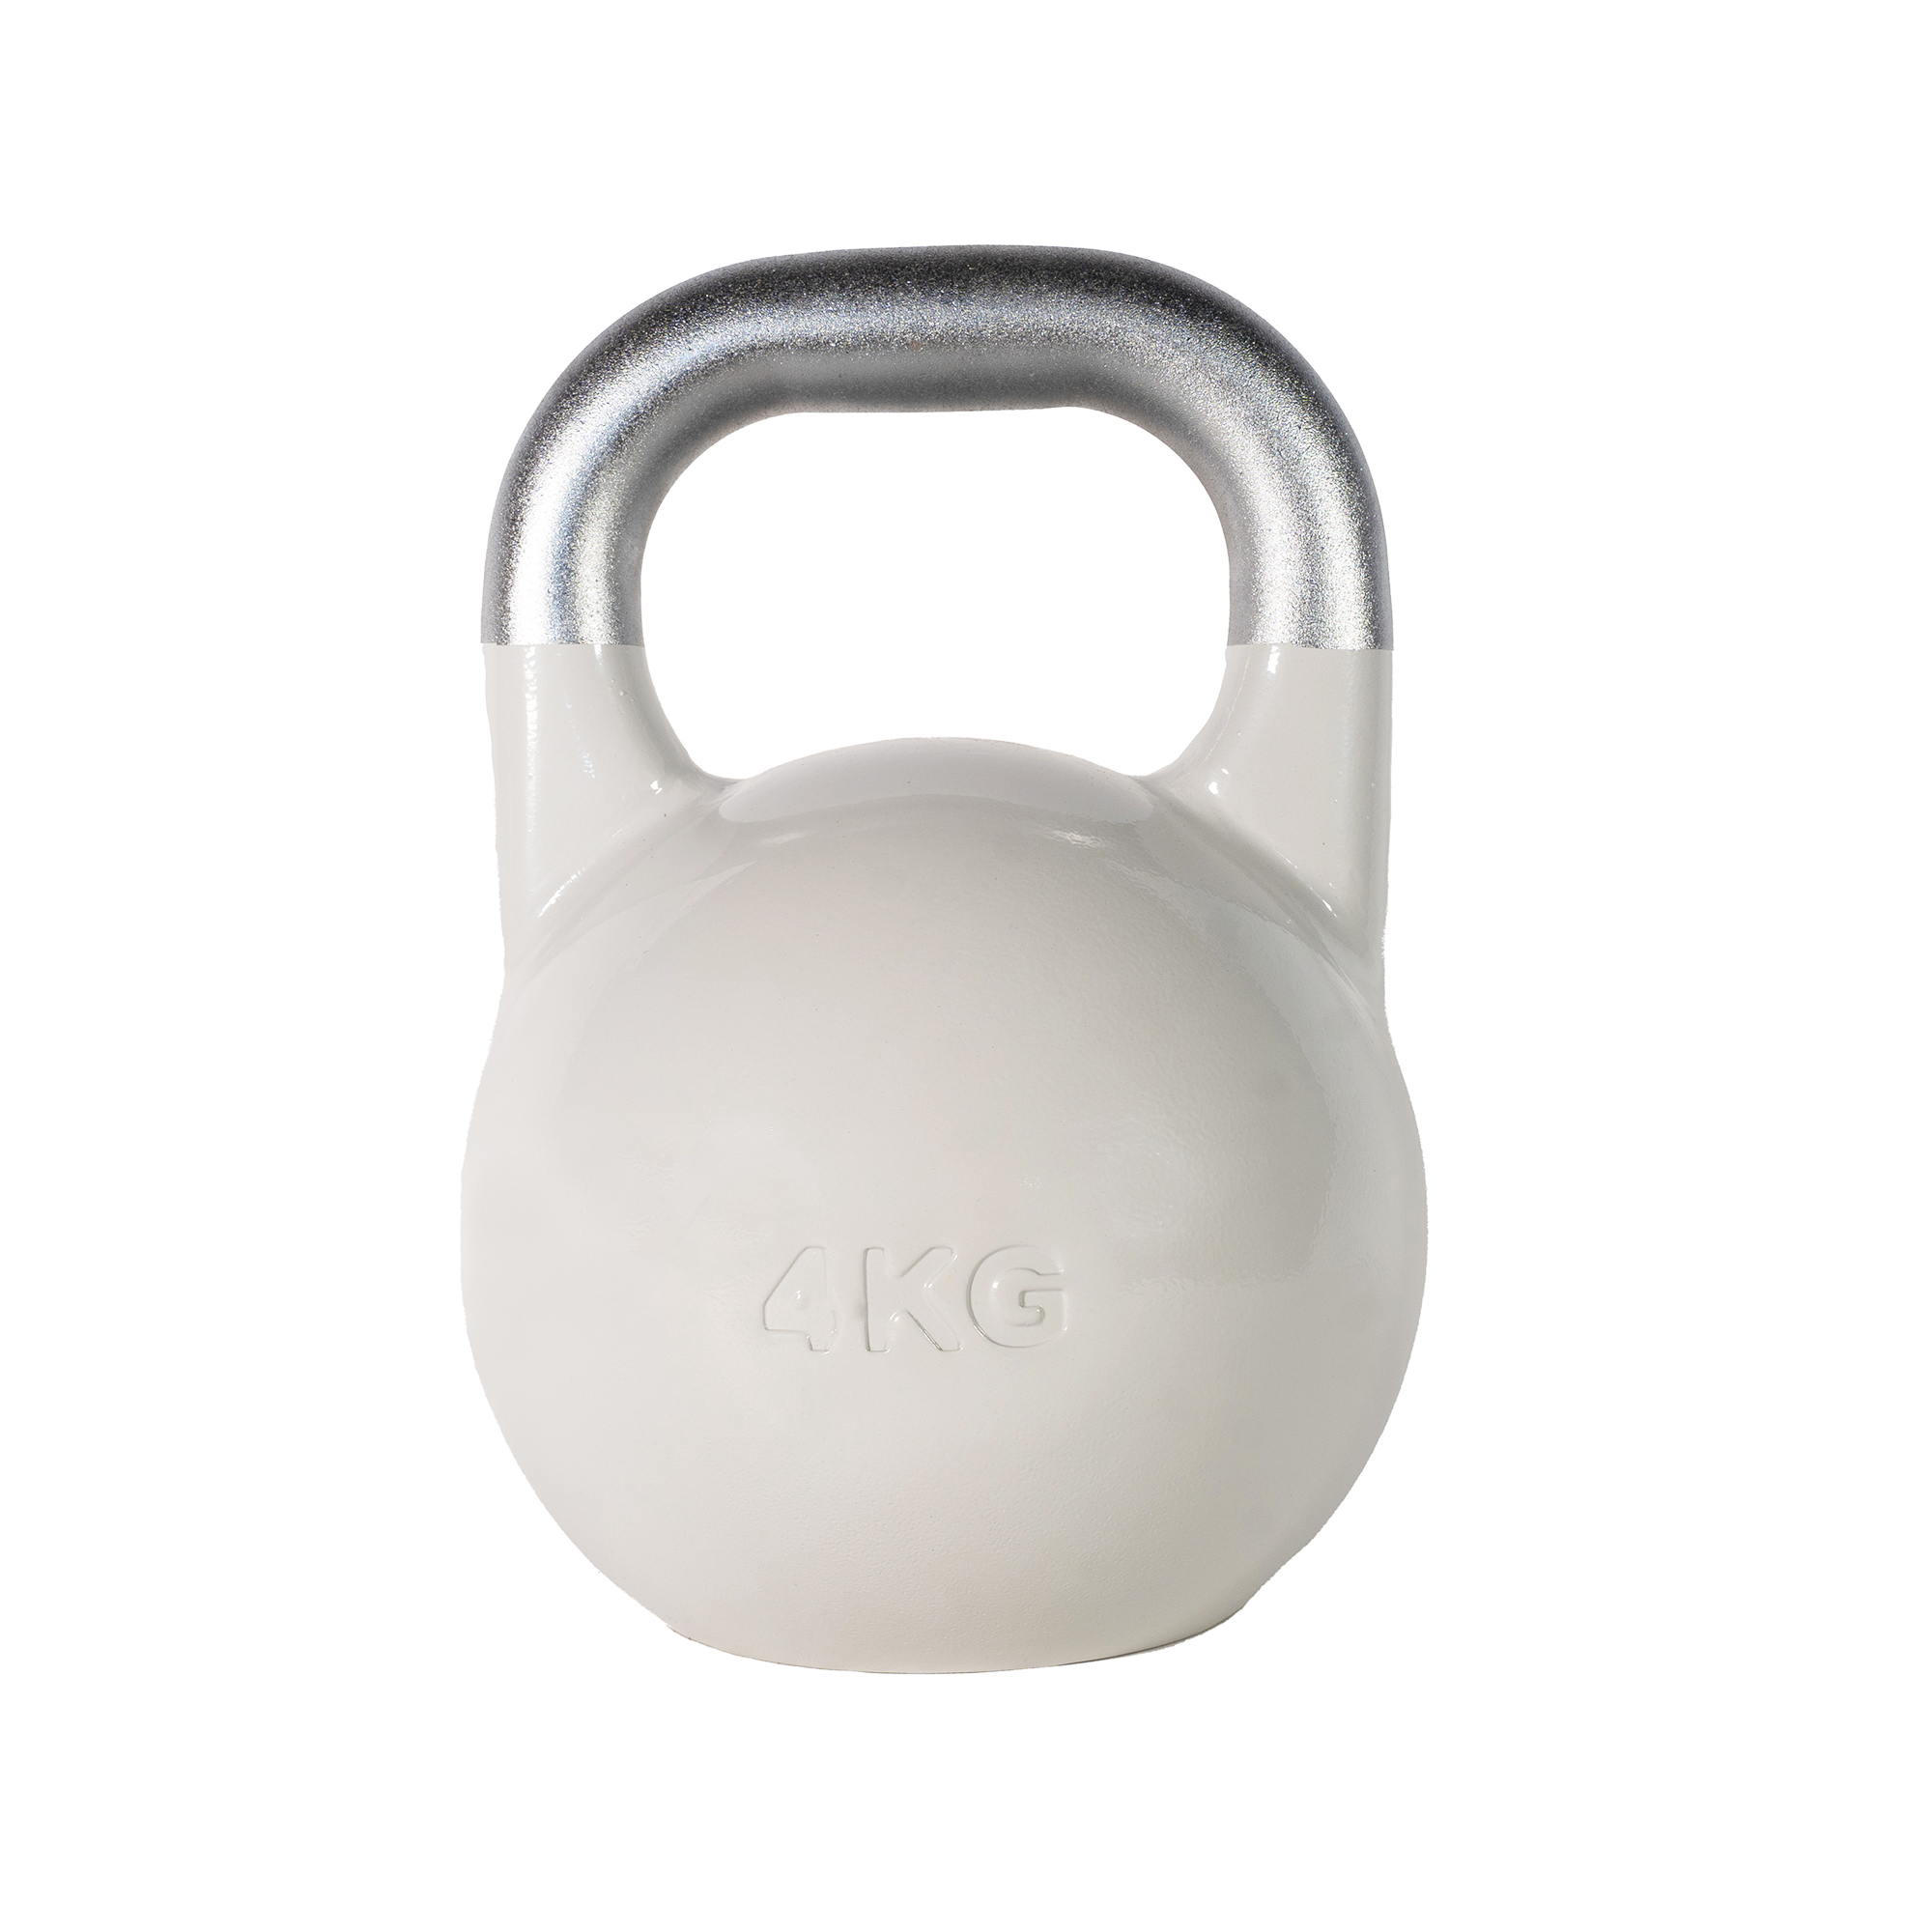 Brug SQ&SN Competition Kettlebell (4 kg) i støbejern. Udstyr til crossfit træning, styrketræning og funktionel træning til en forbedret oplevelse